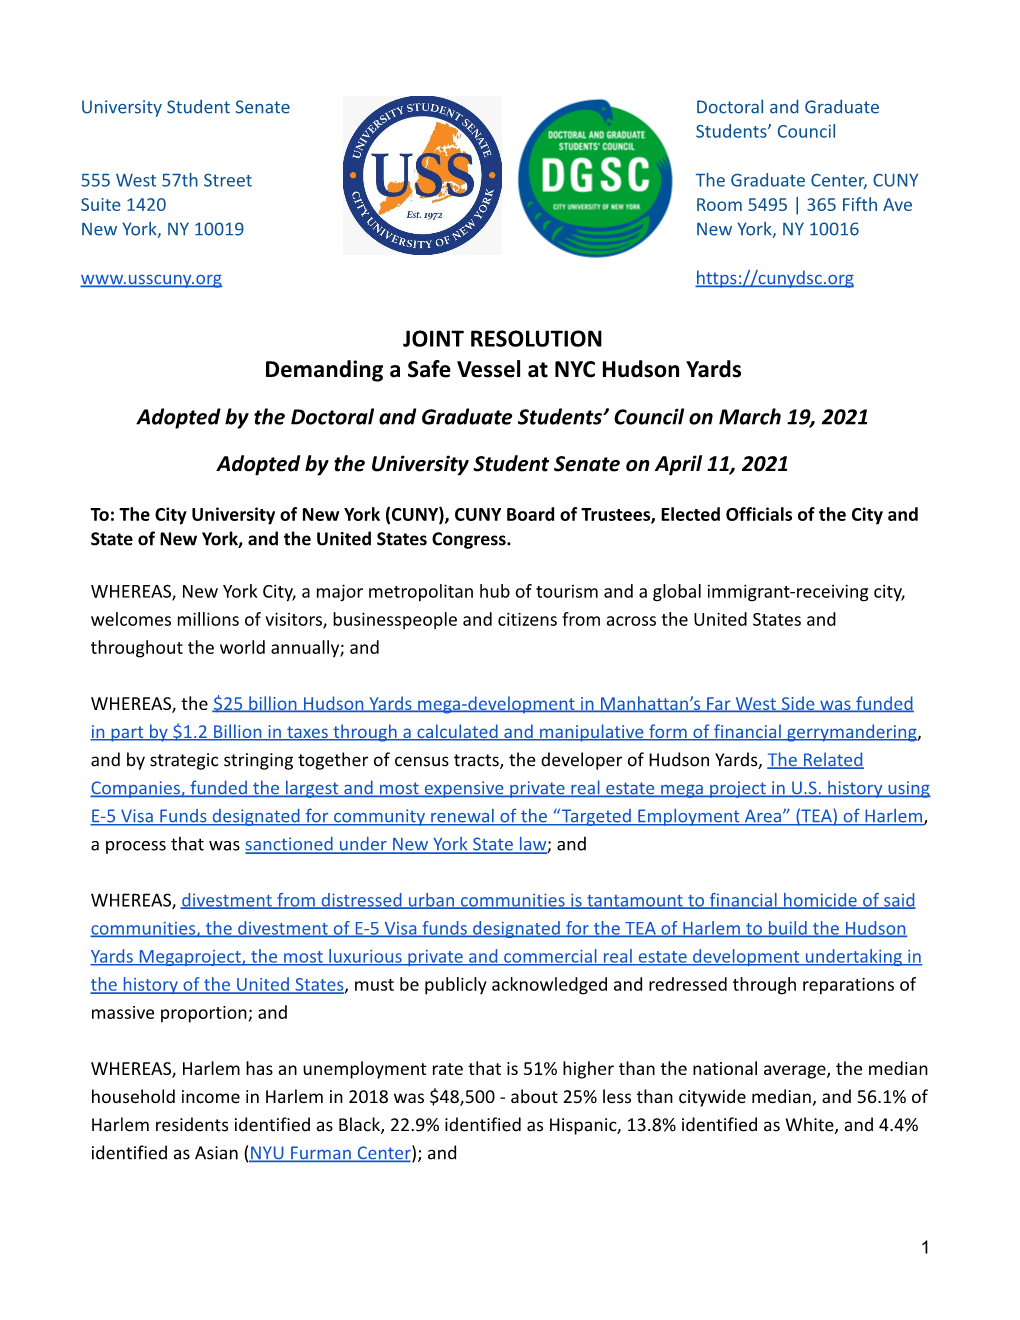 USS/DGSC Joint Resolution Demanding a Safe "Vessel"